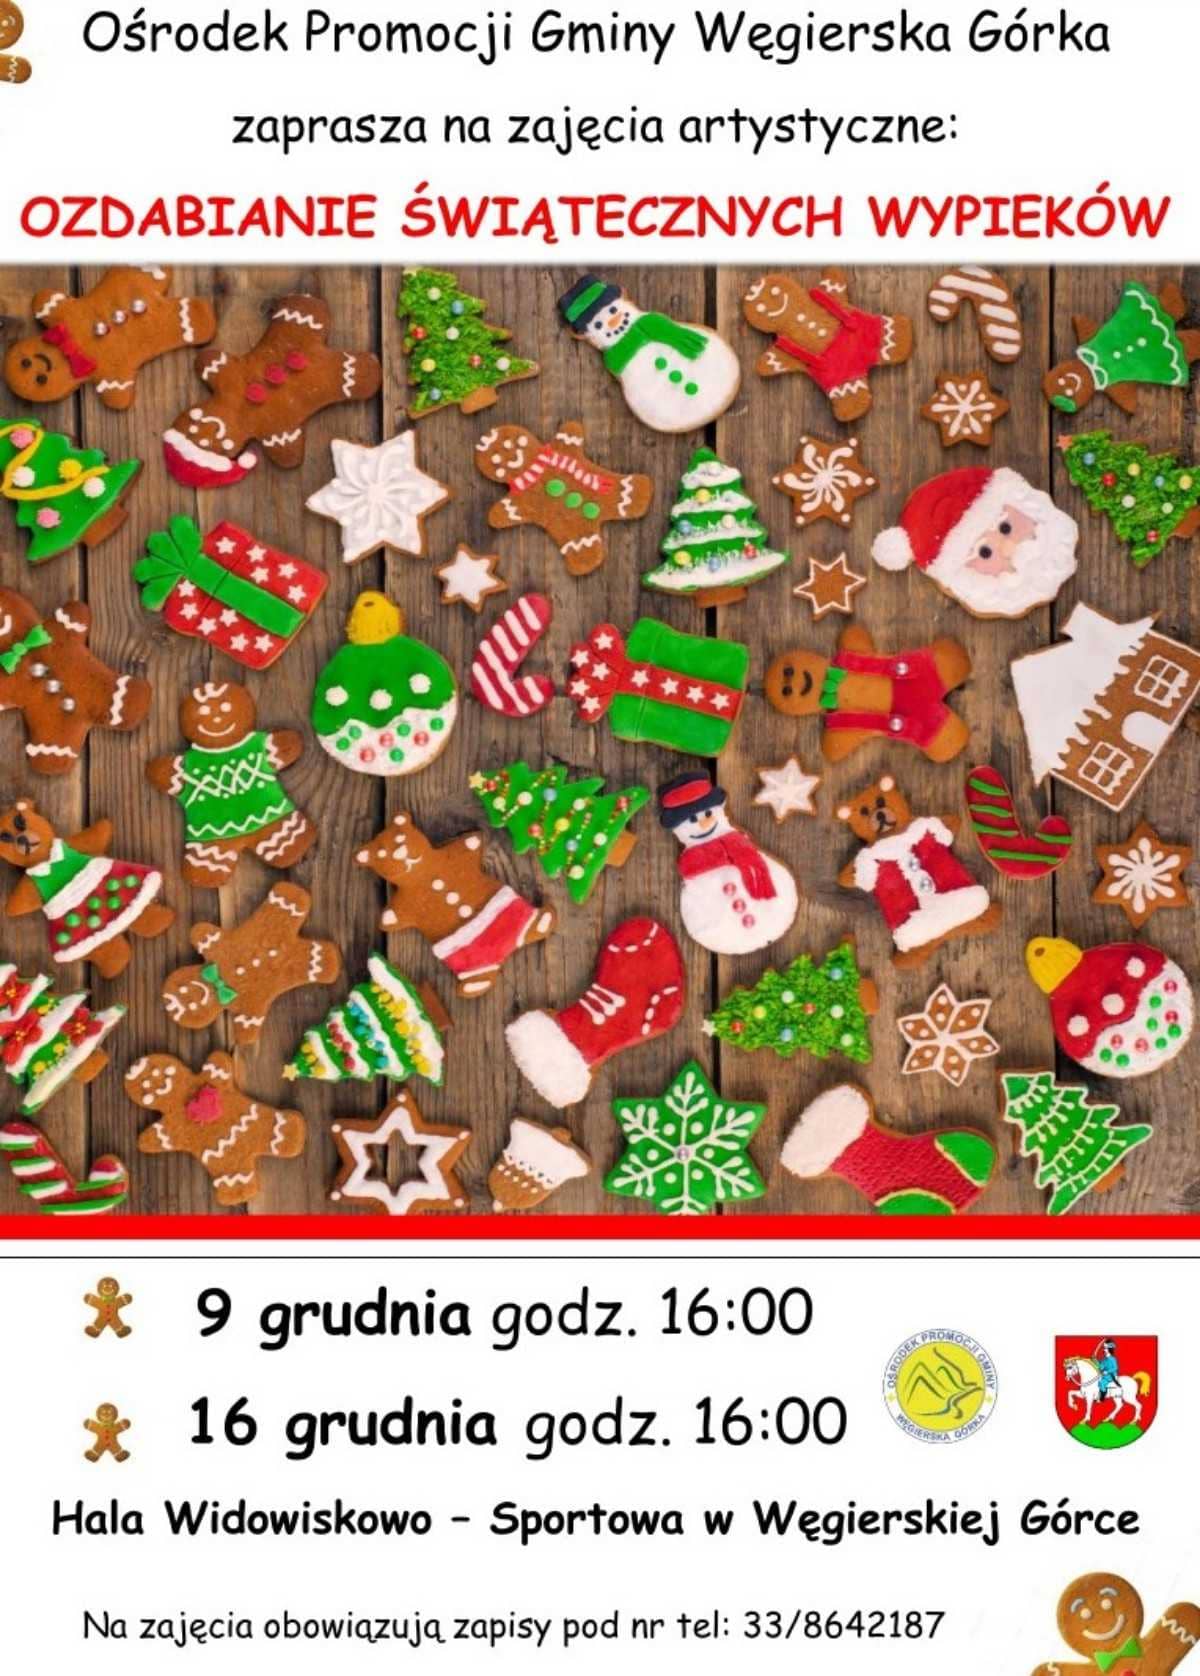 Ozdabianie świątecznych wypieków w OPG Węgierska Górka